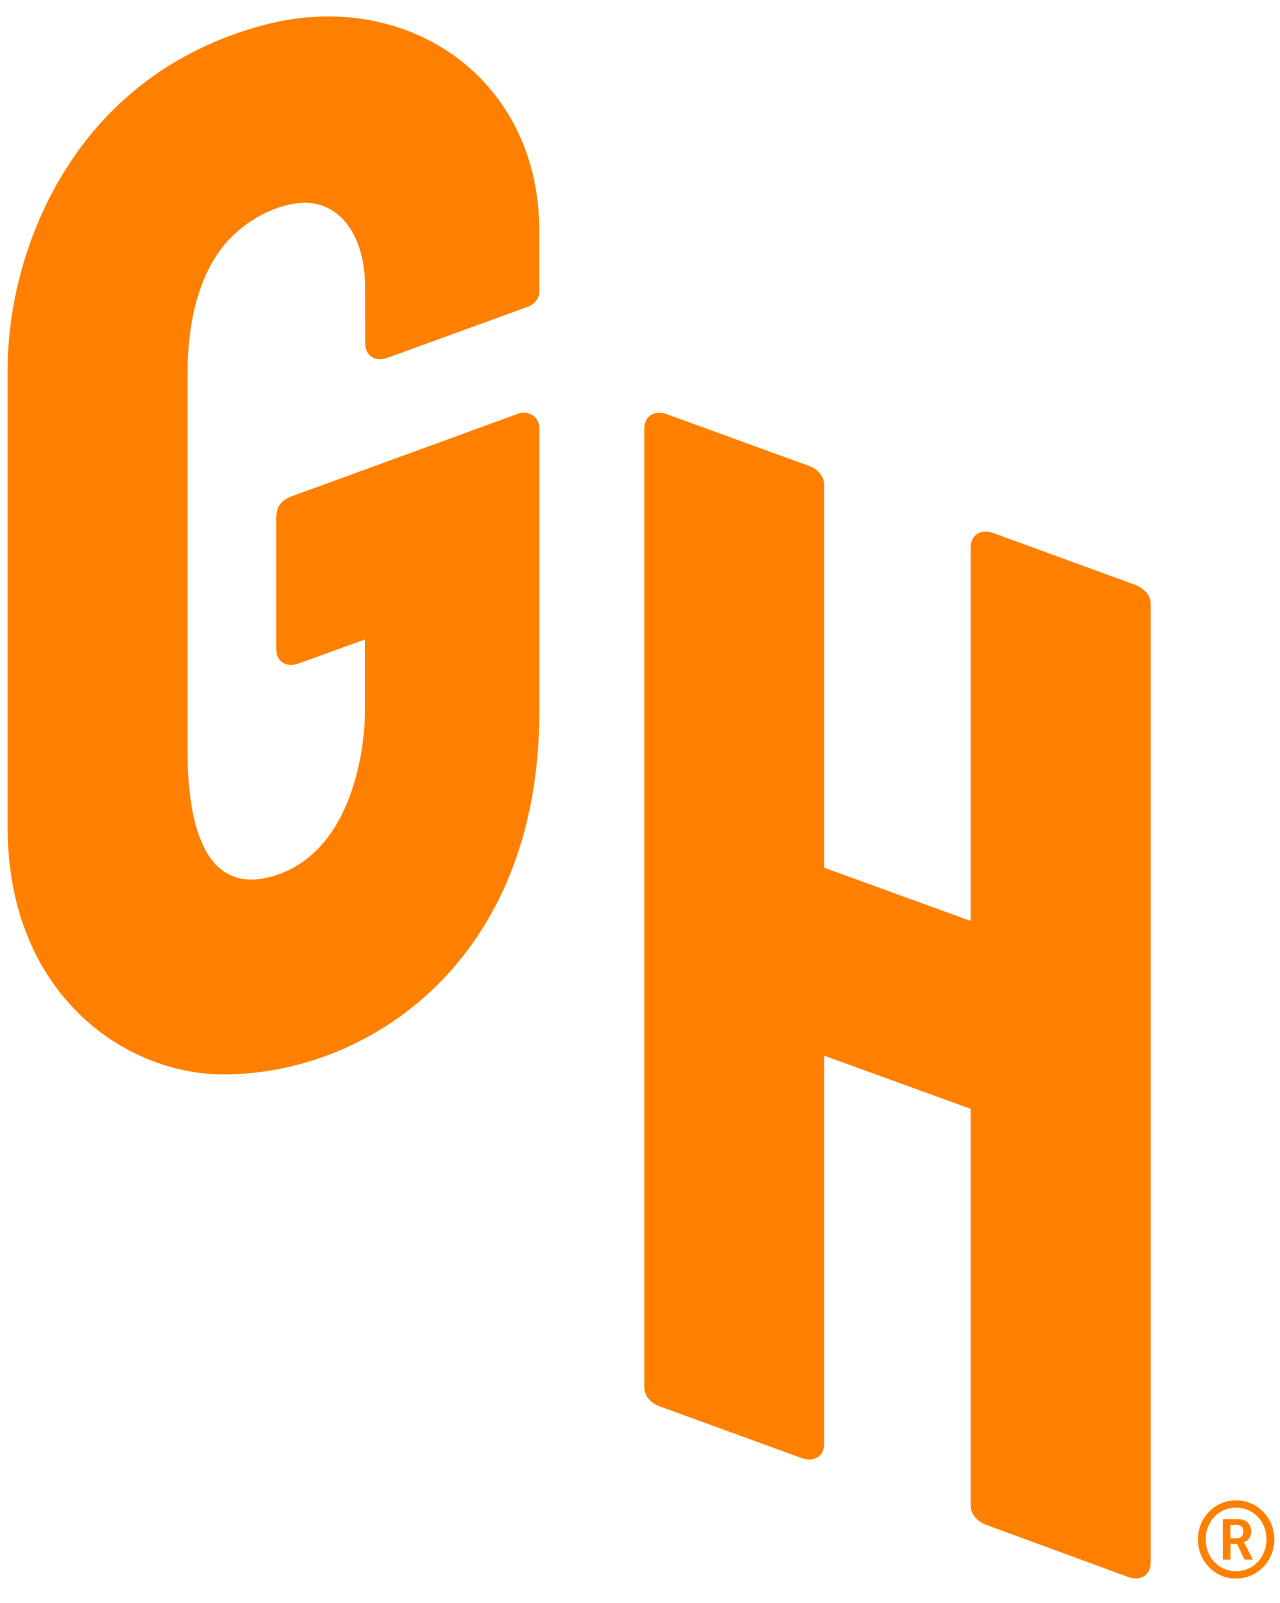 Grubhub Logo PNG Image